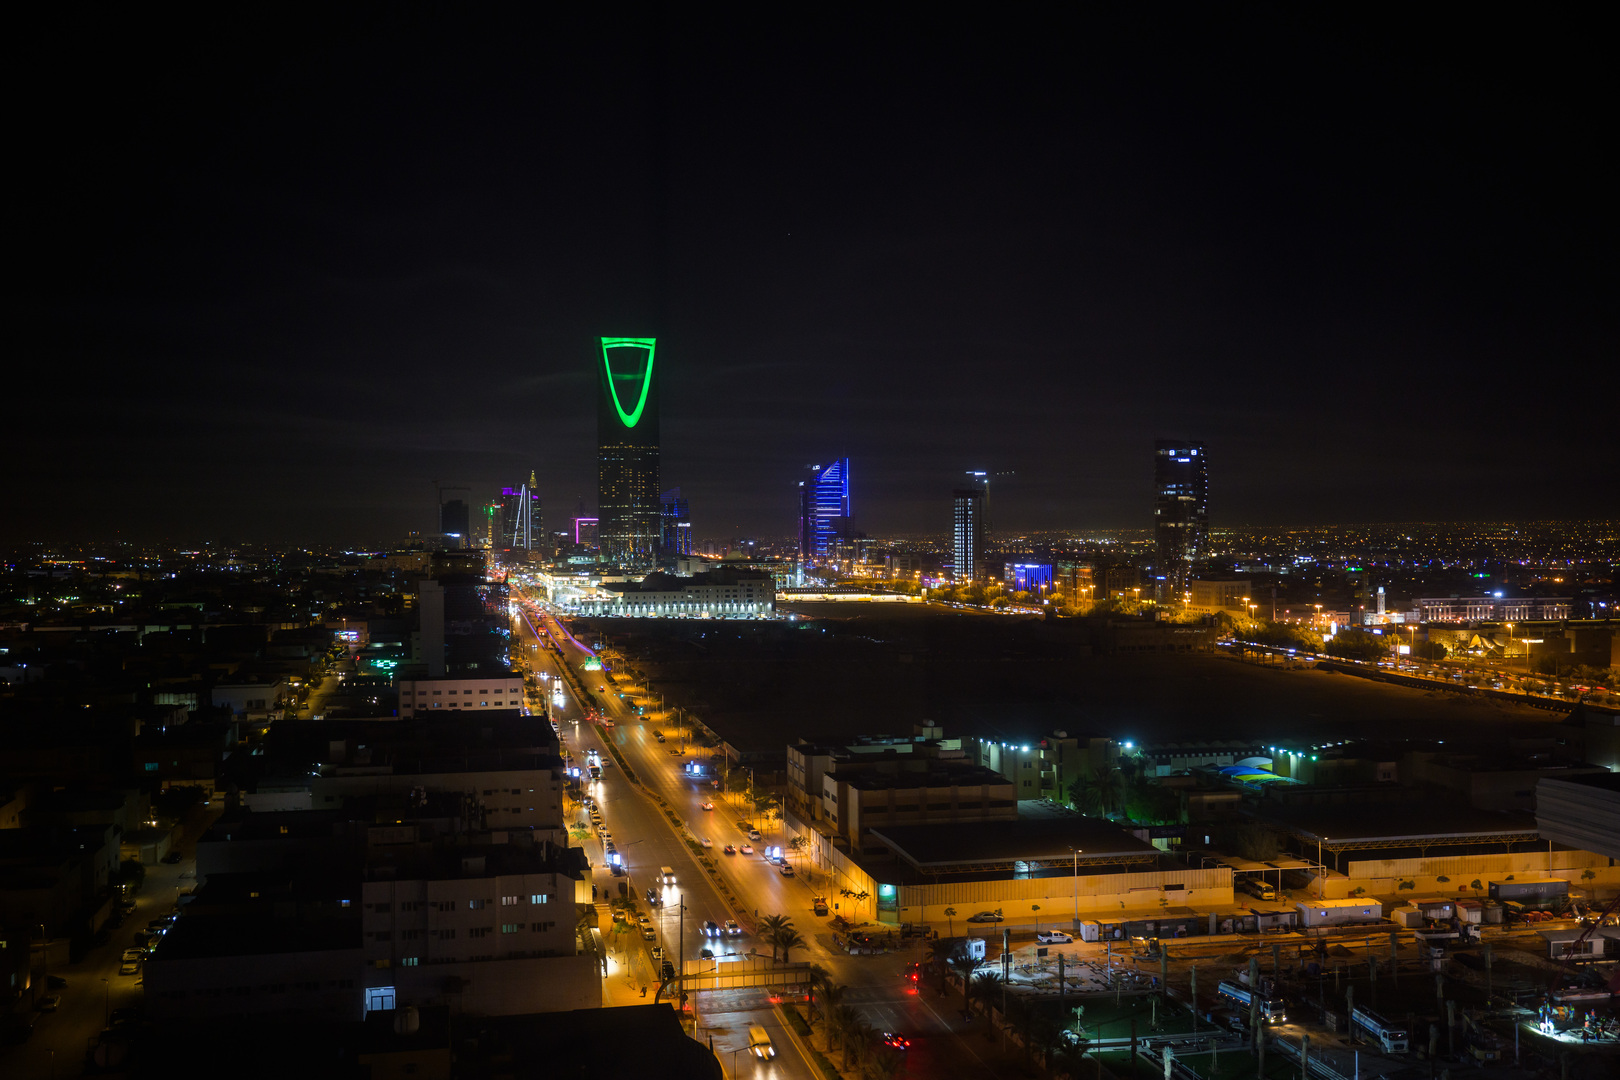 السعودية تطلق 5 إقامات لاستقطاب الكفاءات والمواهب